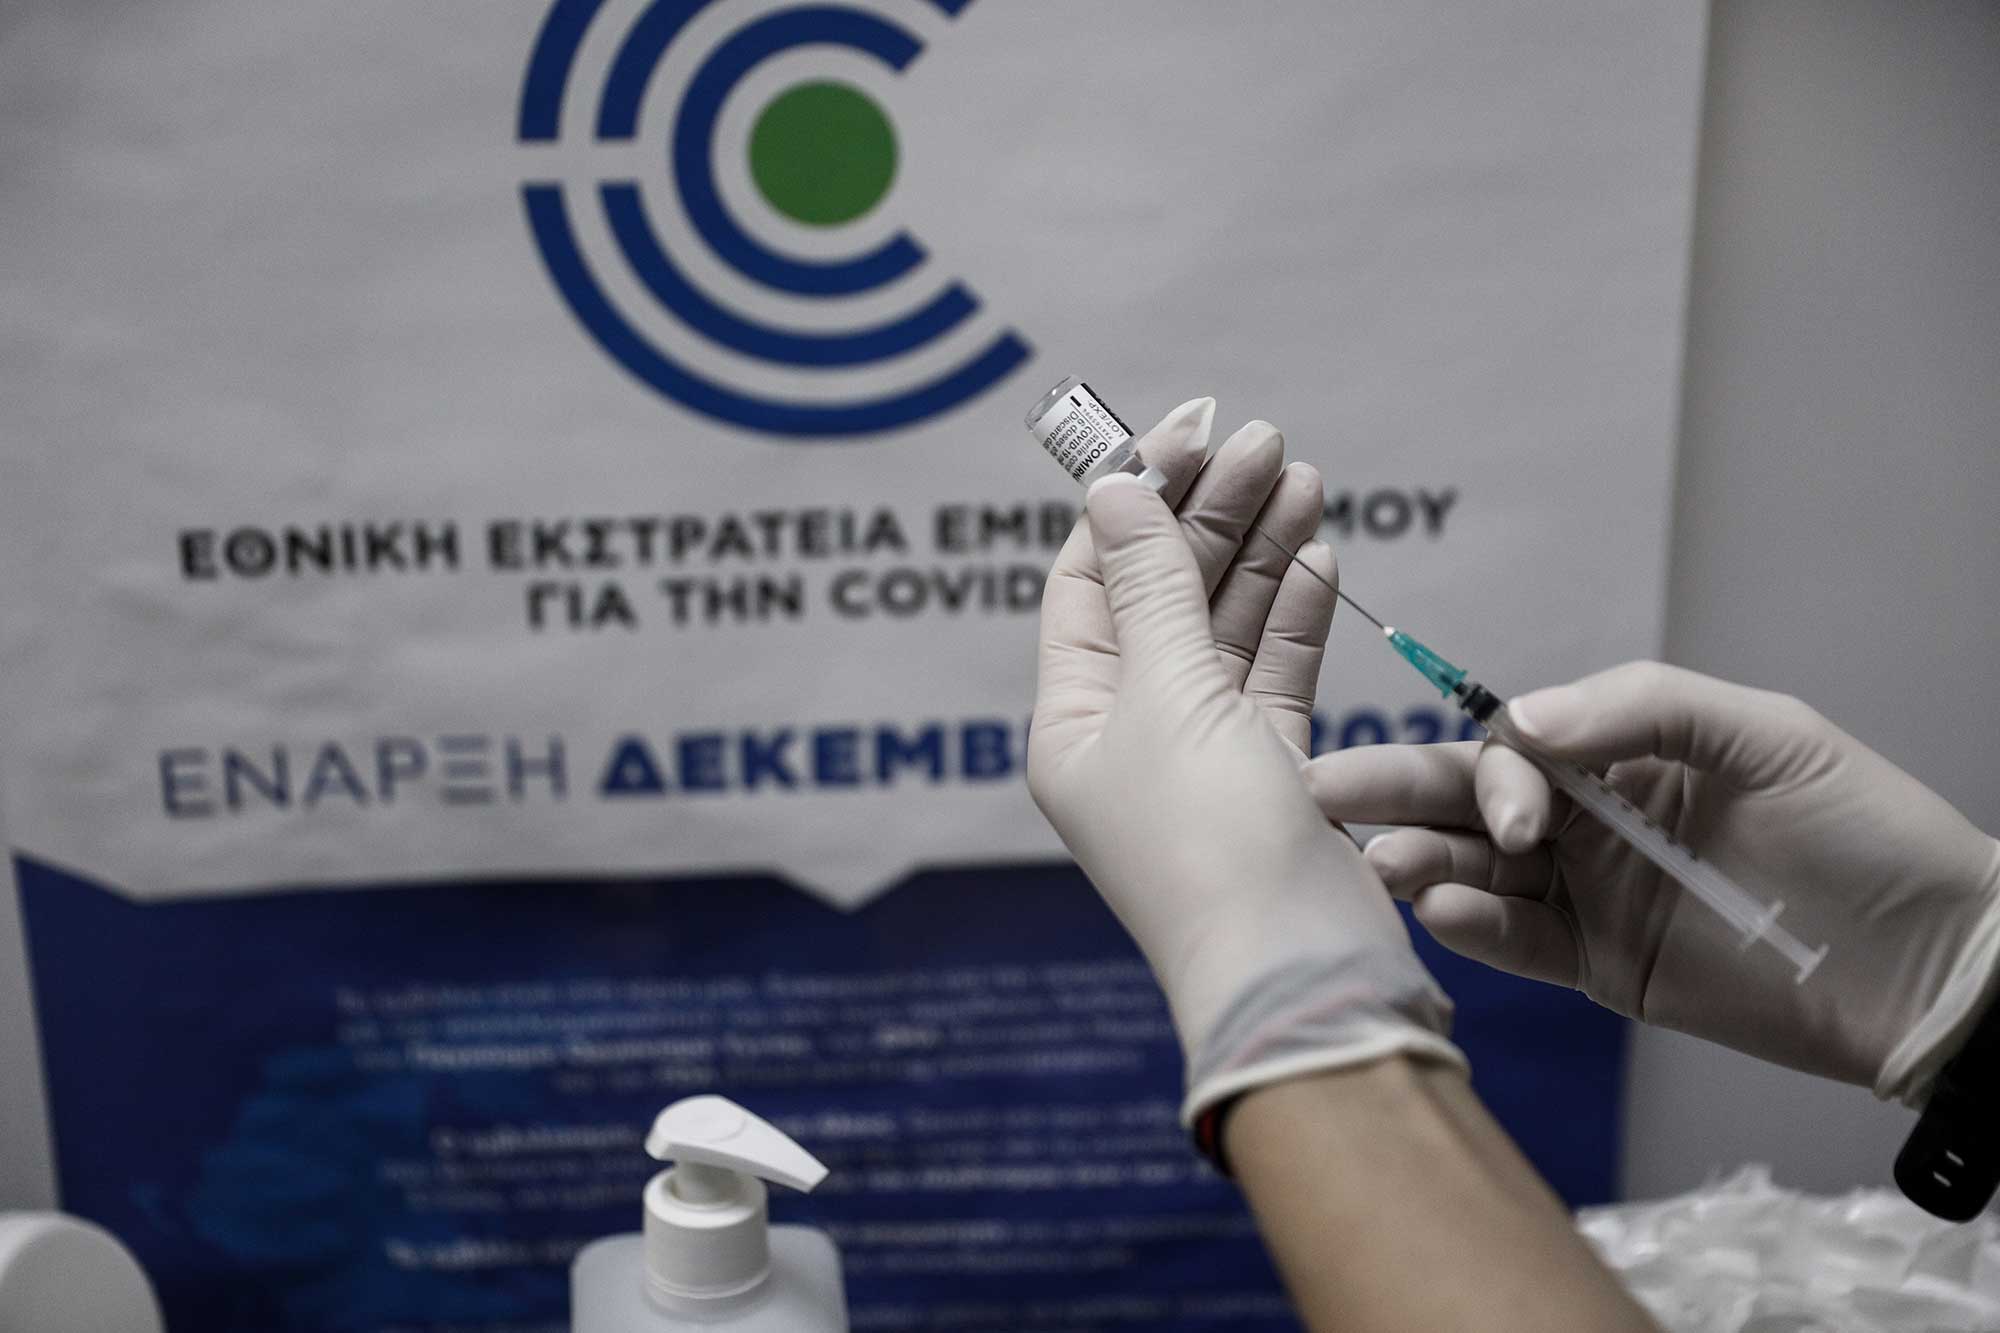 X. Χατζηχριστοδούλου στο Πρώτο: Οι εμβολιασμένοι πρέπει να έχουν διαφορετική μεταχείριση – Η απαγόρευση της κυκλοφορίας θα συνεχιστεί